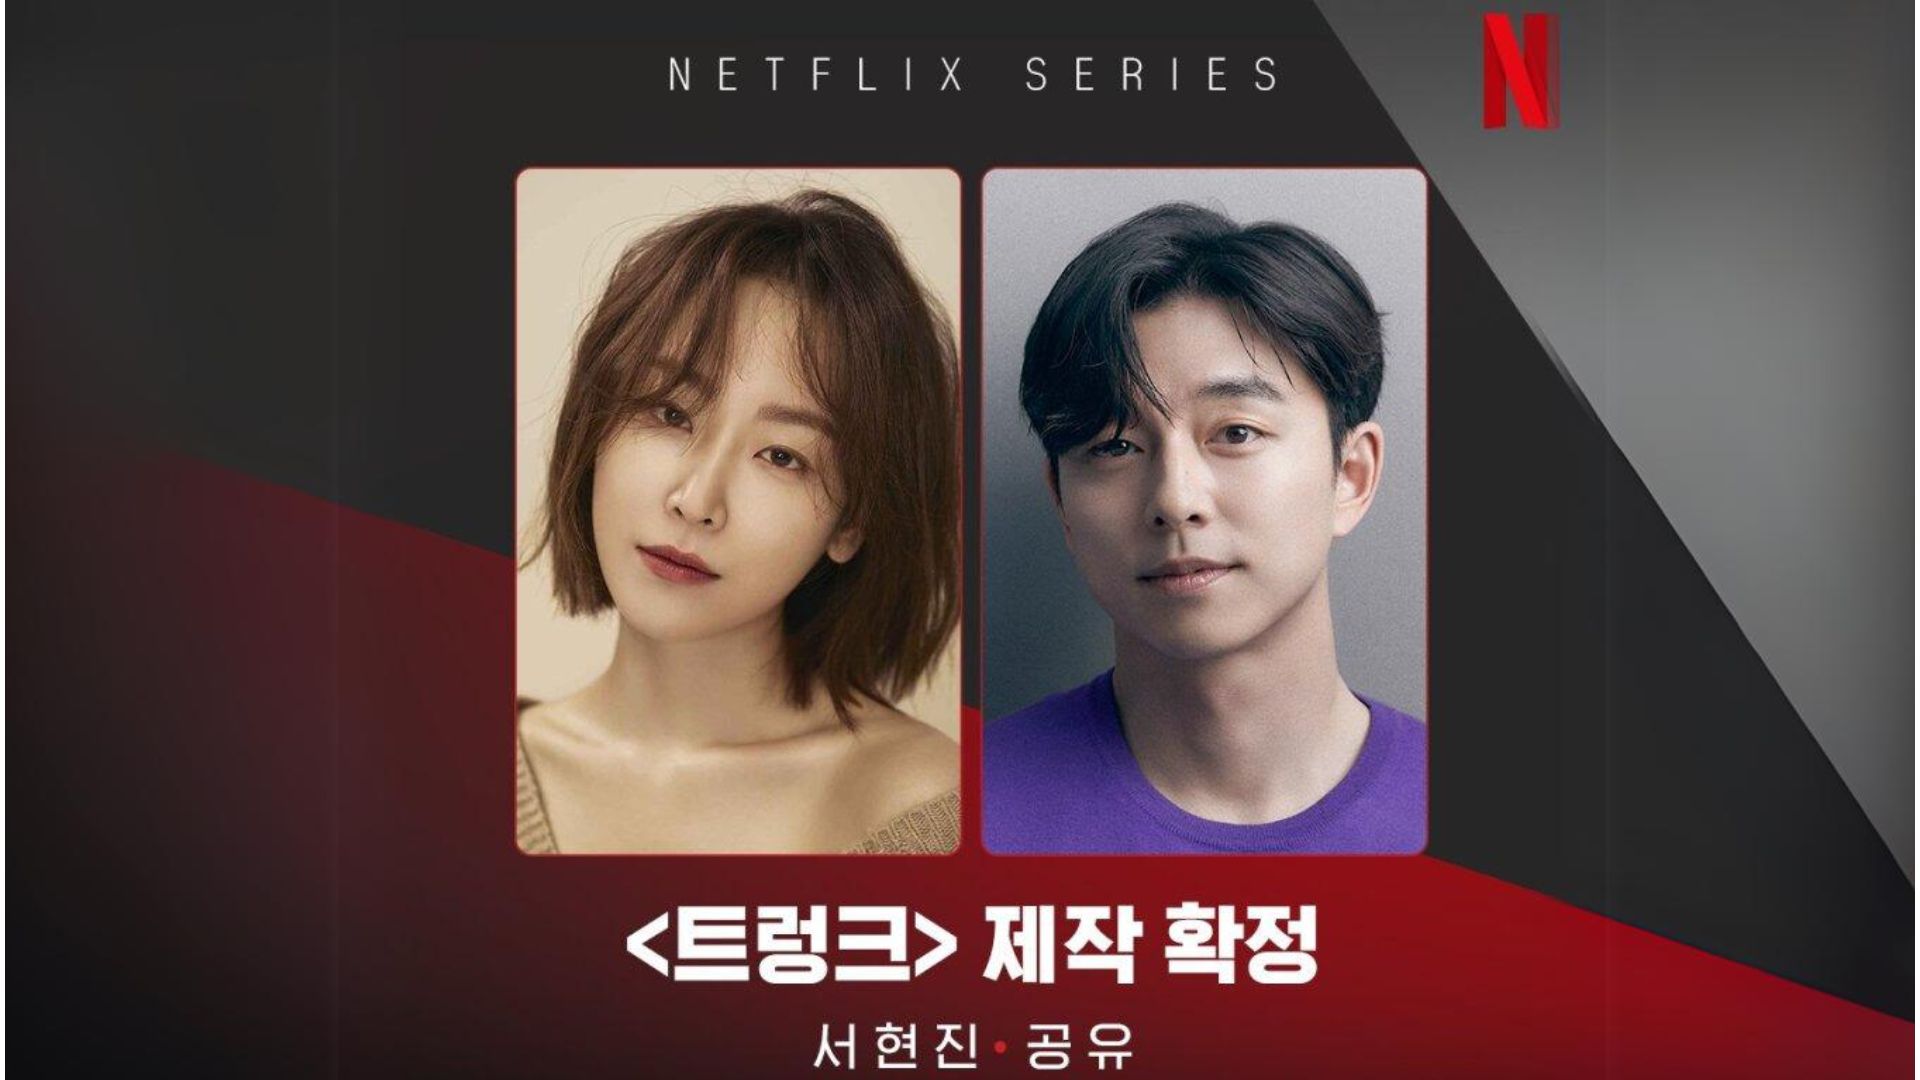 Seo Hyun Jin e Gong Yoo em imagem de confirmação do elenco de ‘The Trunk’ | Divulgação / Netflix